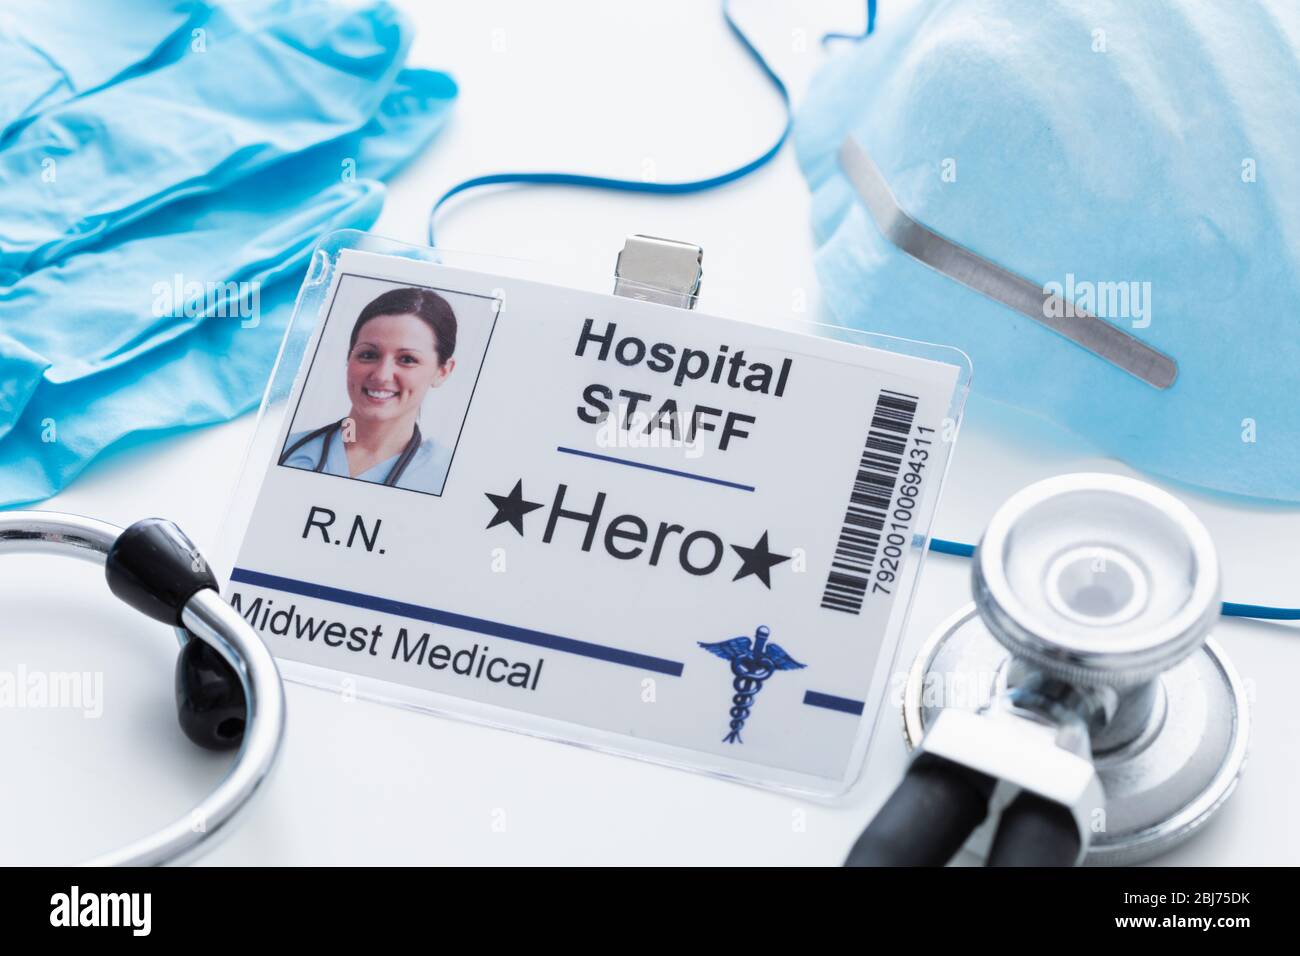 Hero nurses tag in medical scene Stock Photo